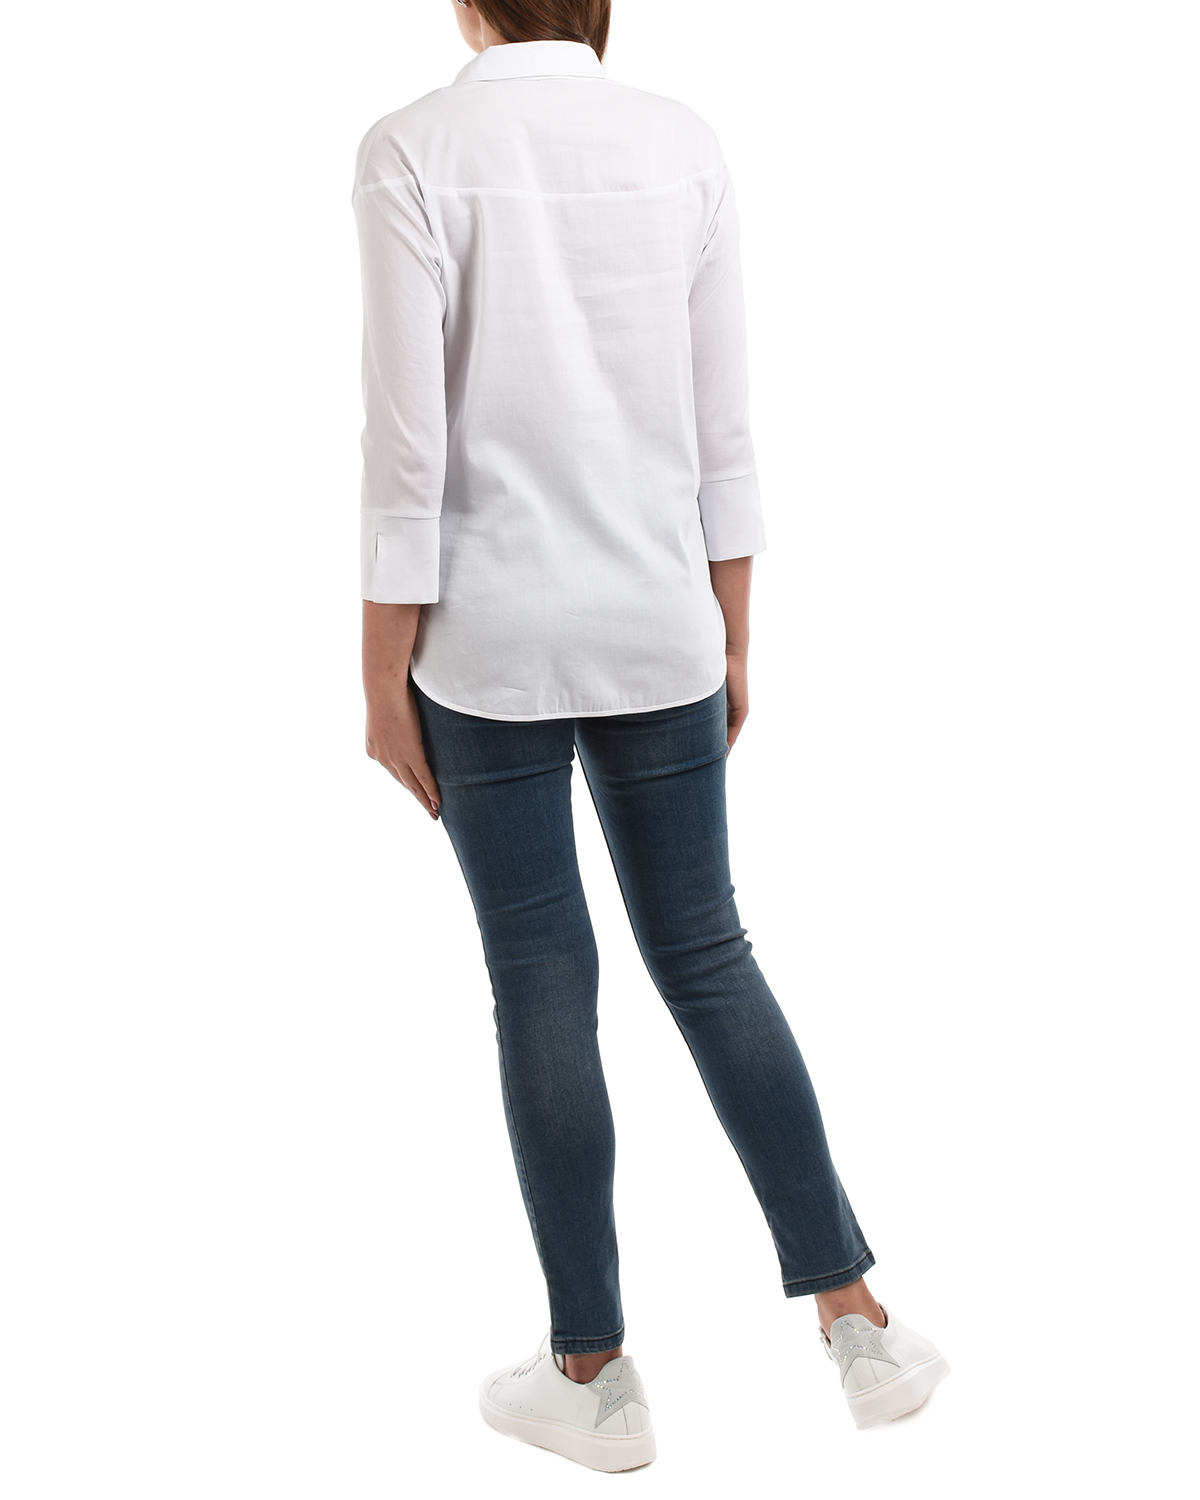 Белая блуза с рукавами 3/4 Attesa, размер 38, цвет белый Белая блуза с рукавами 3/4 Attesa - фото 3